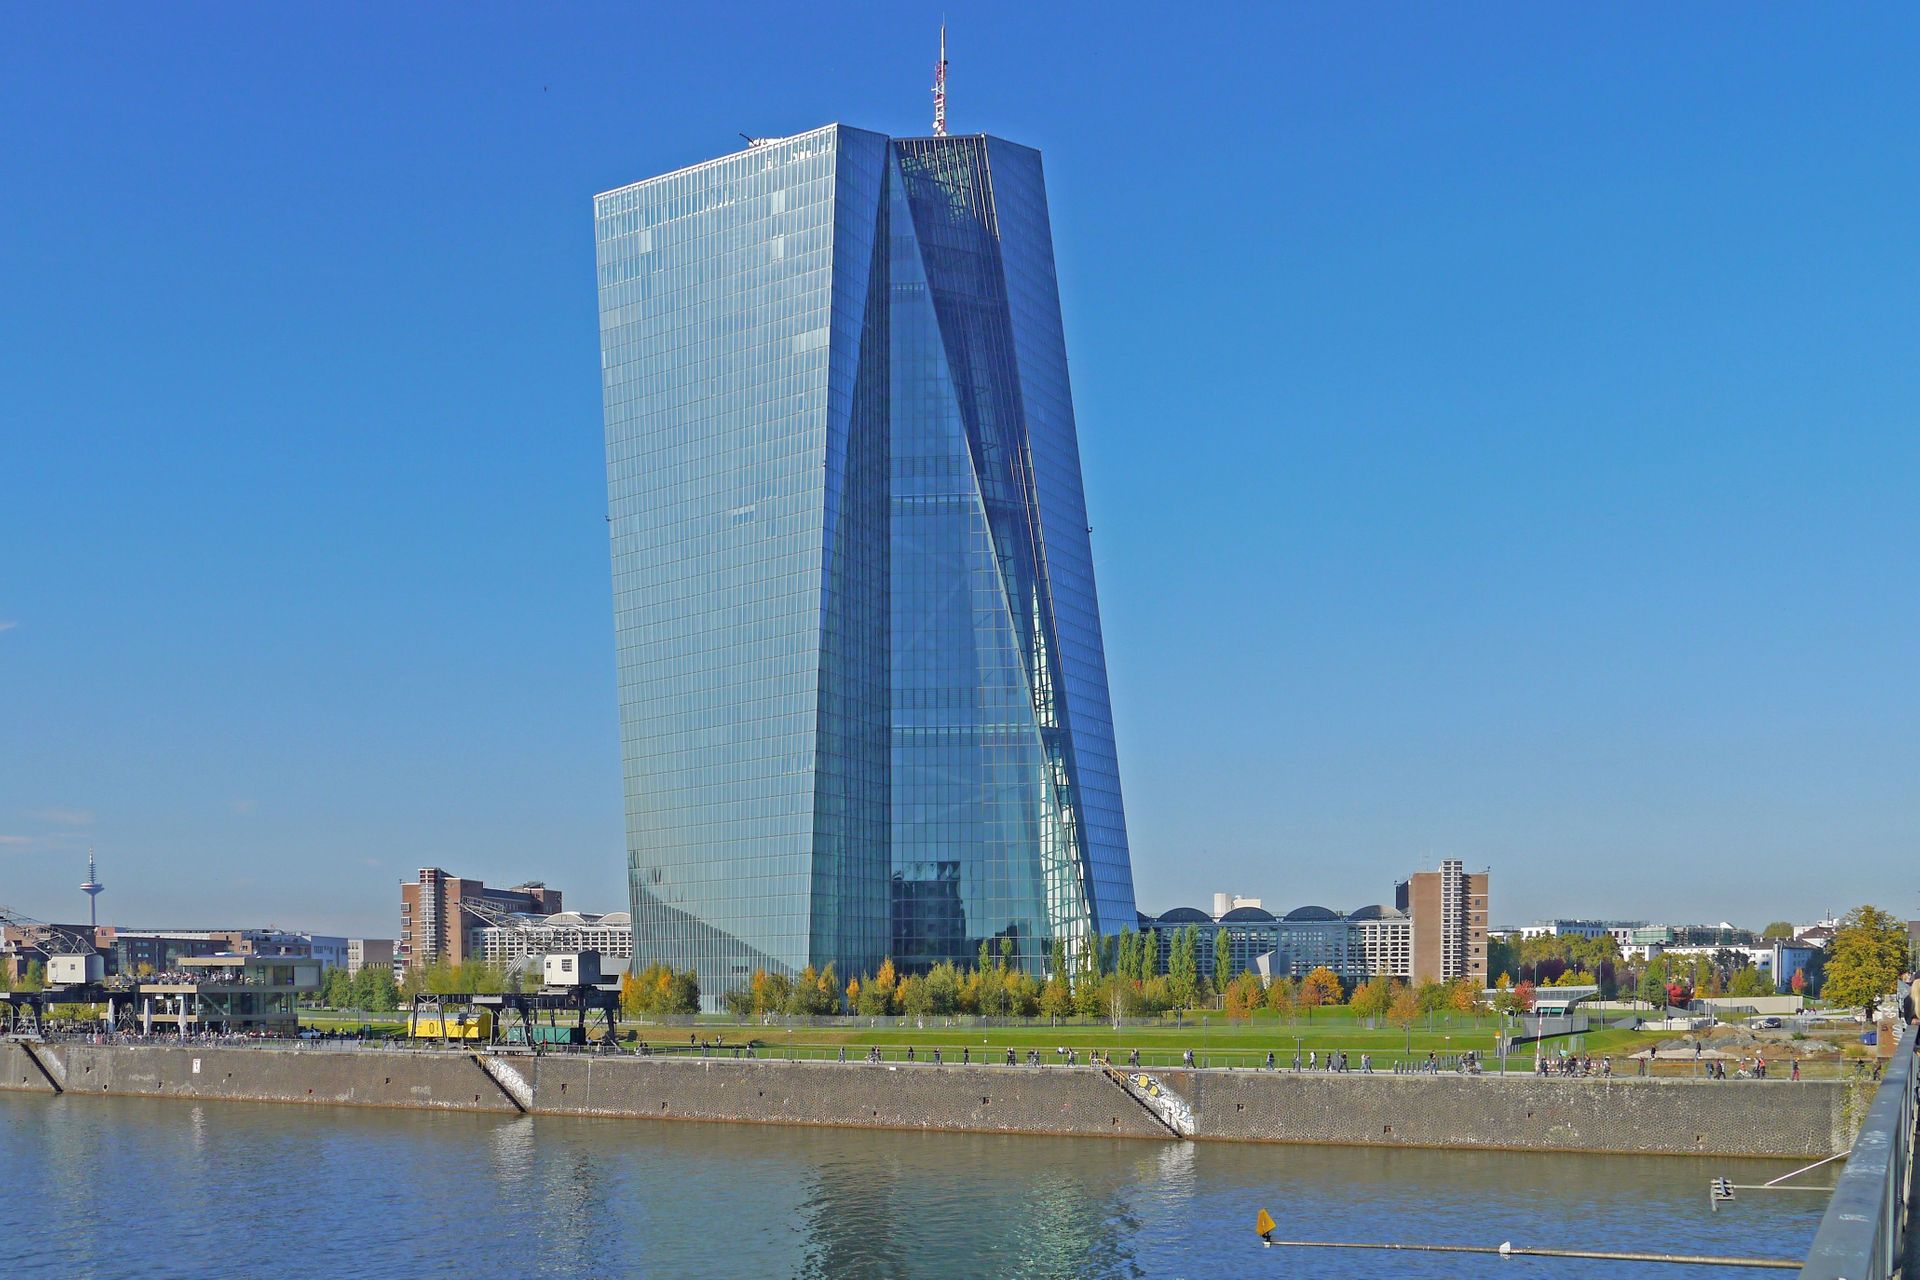 Եվրոպական կենտրոնական բանկի (ԵԿԲ) կենտրոնական գրասենյակը Մայնի Ֆրանկֆուրտում, Գերմանիա